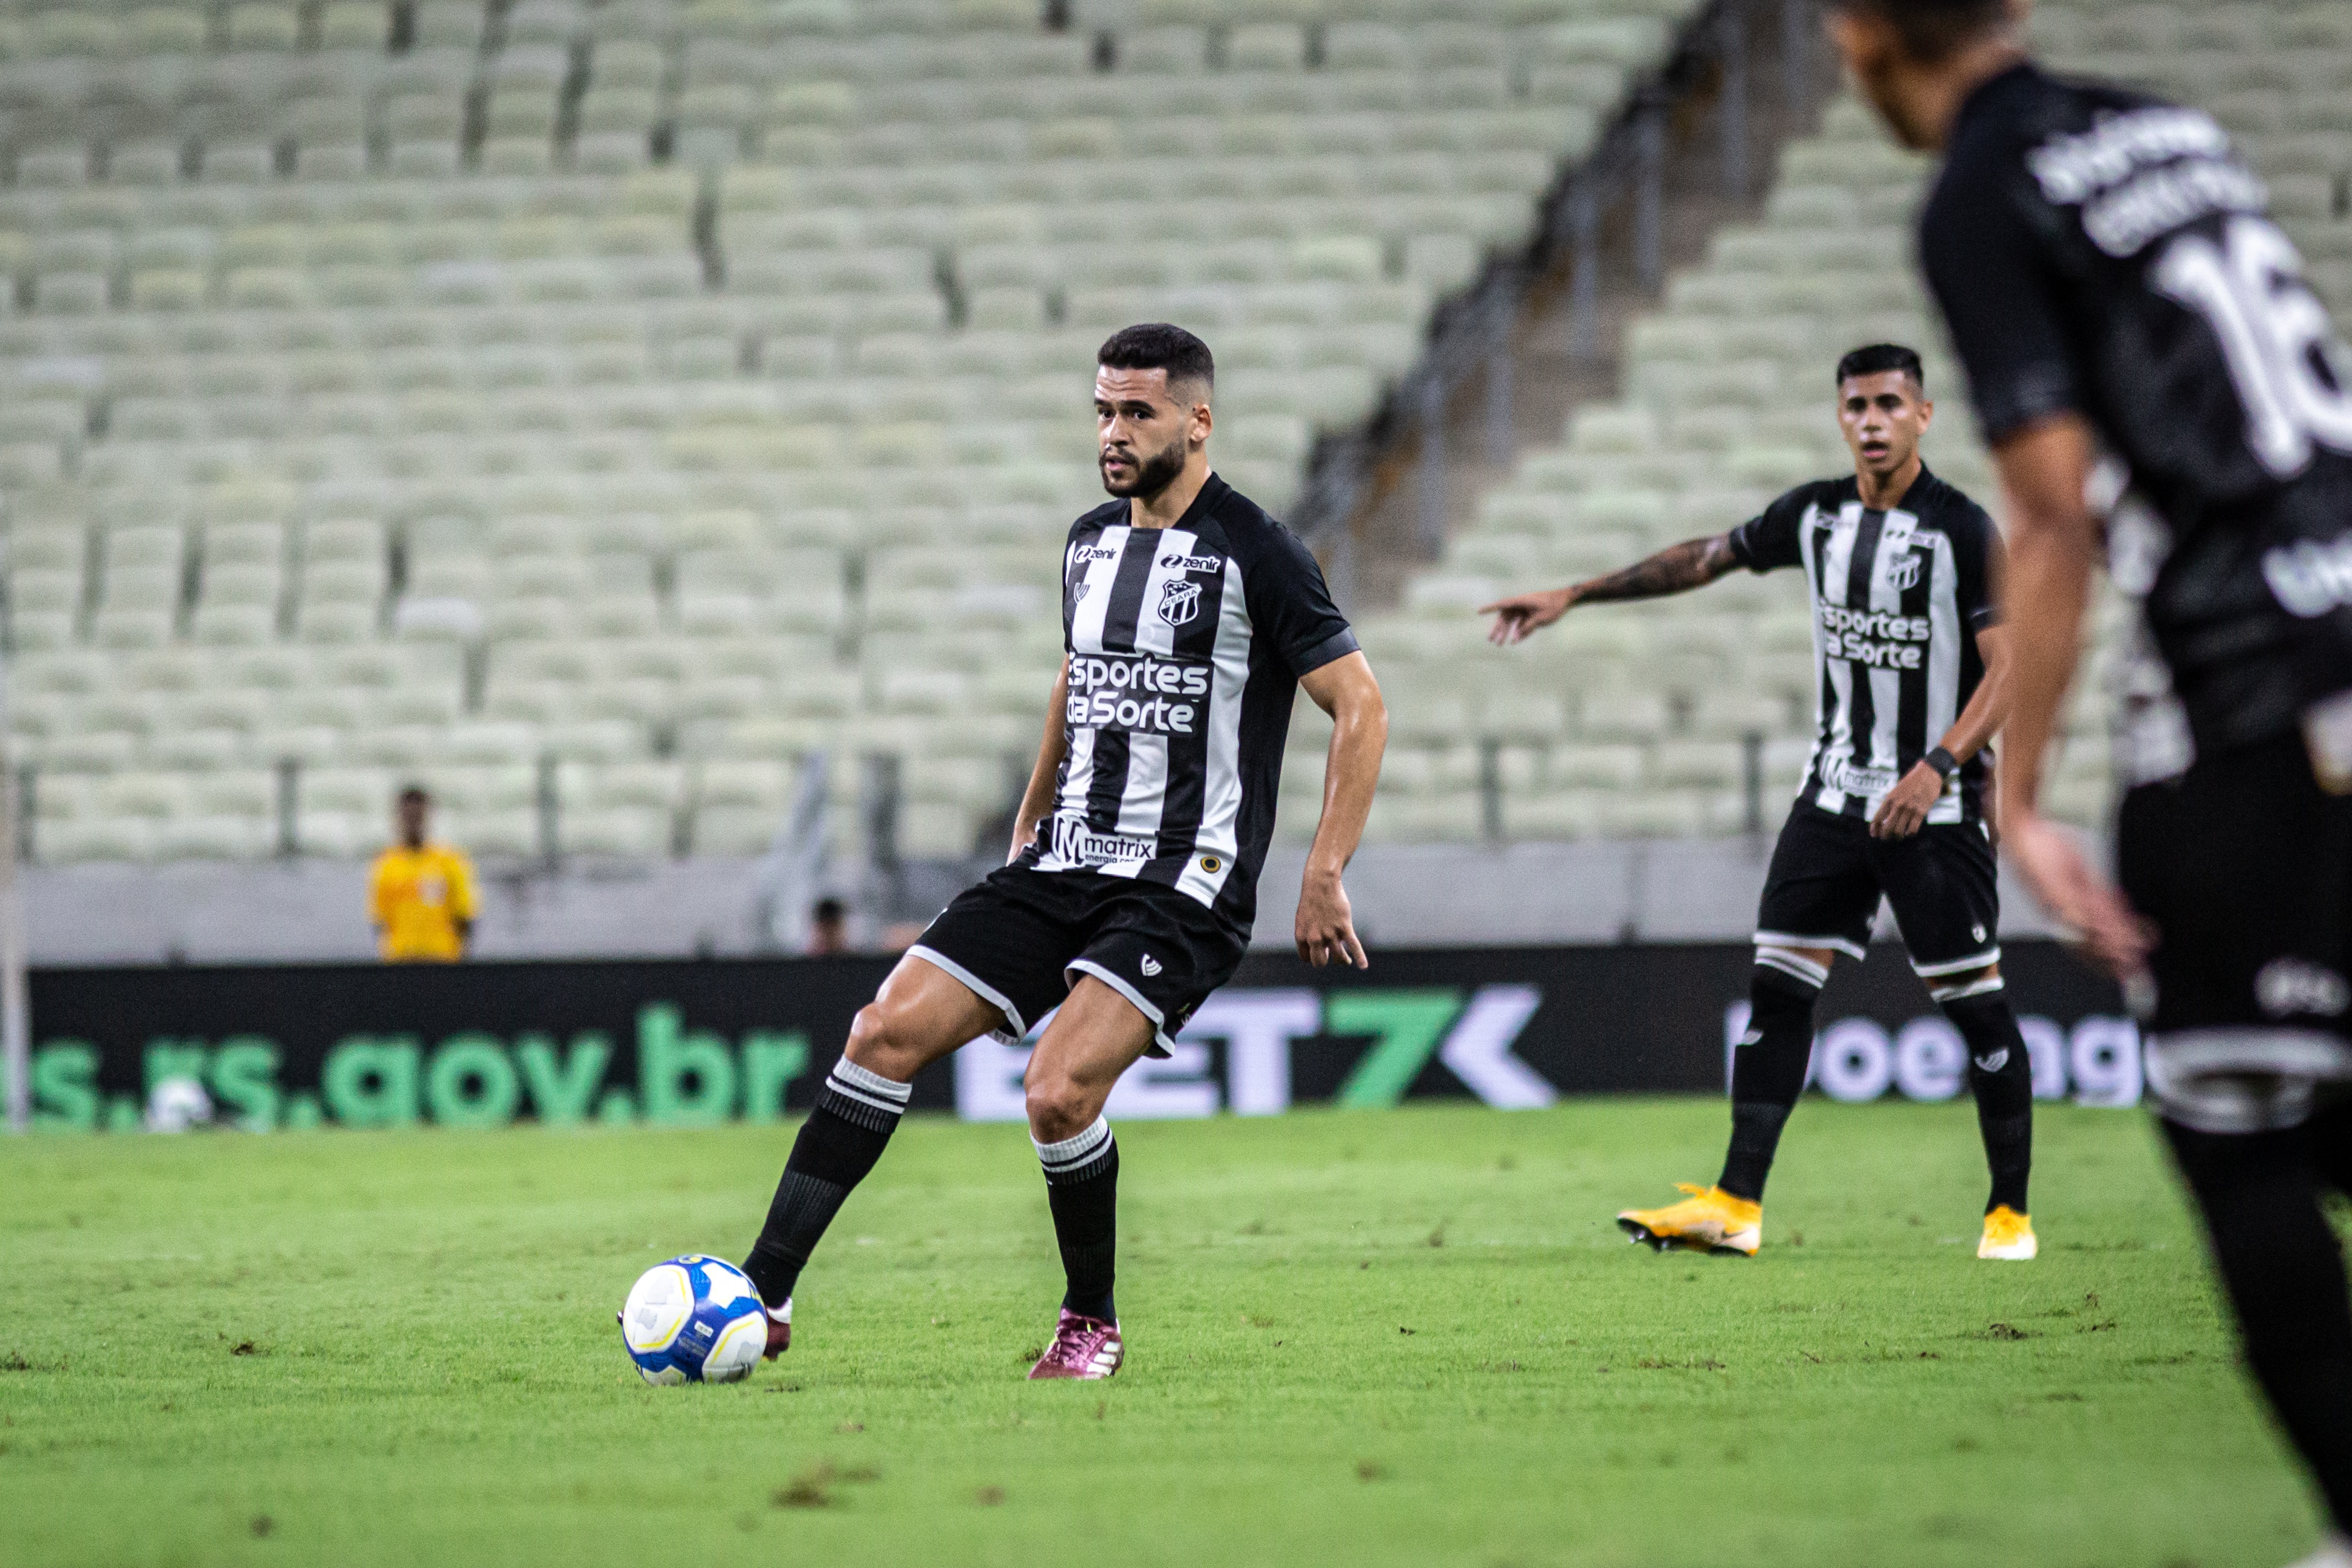 Na Arena Castelão, Ceará recebe o Botafogo/SP pela décima sétima rodada do Campeonato Brasileiro